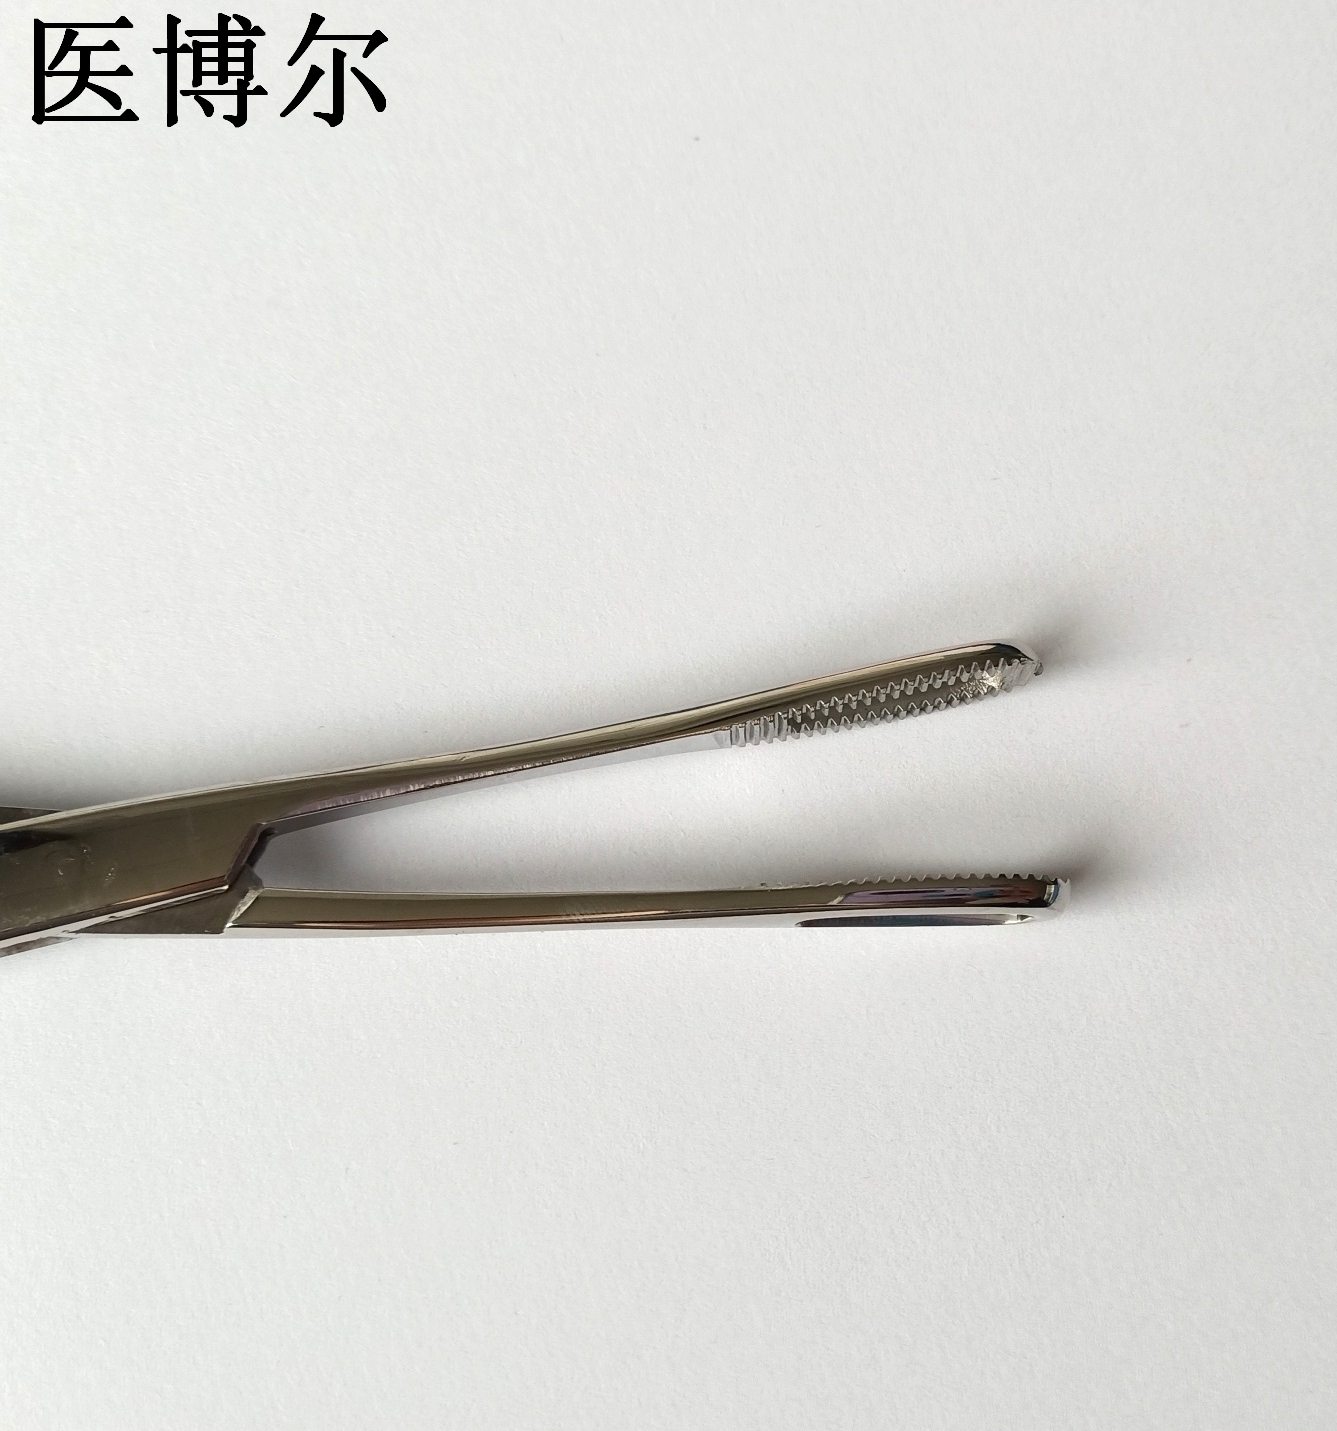 18cm直有齿海绵钳 (7)_看图王.jpg